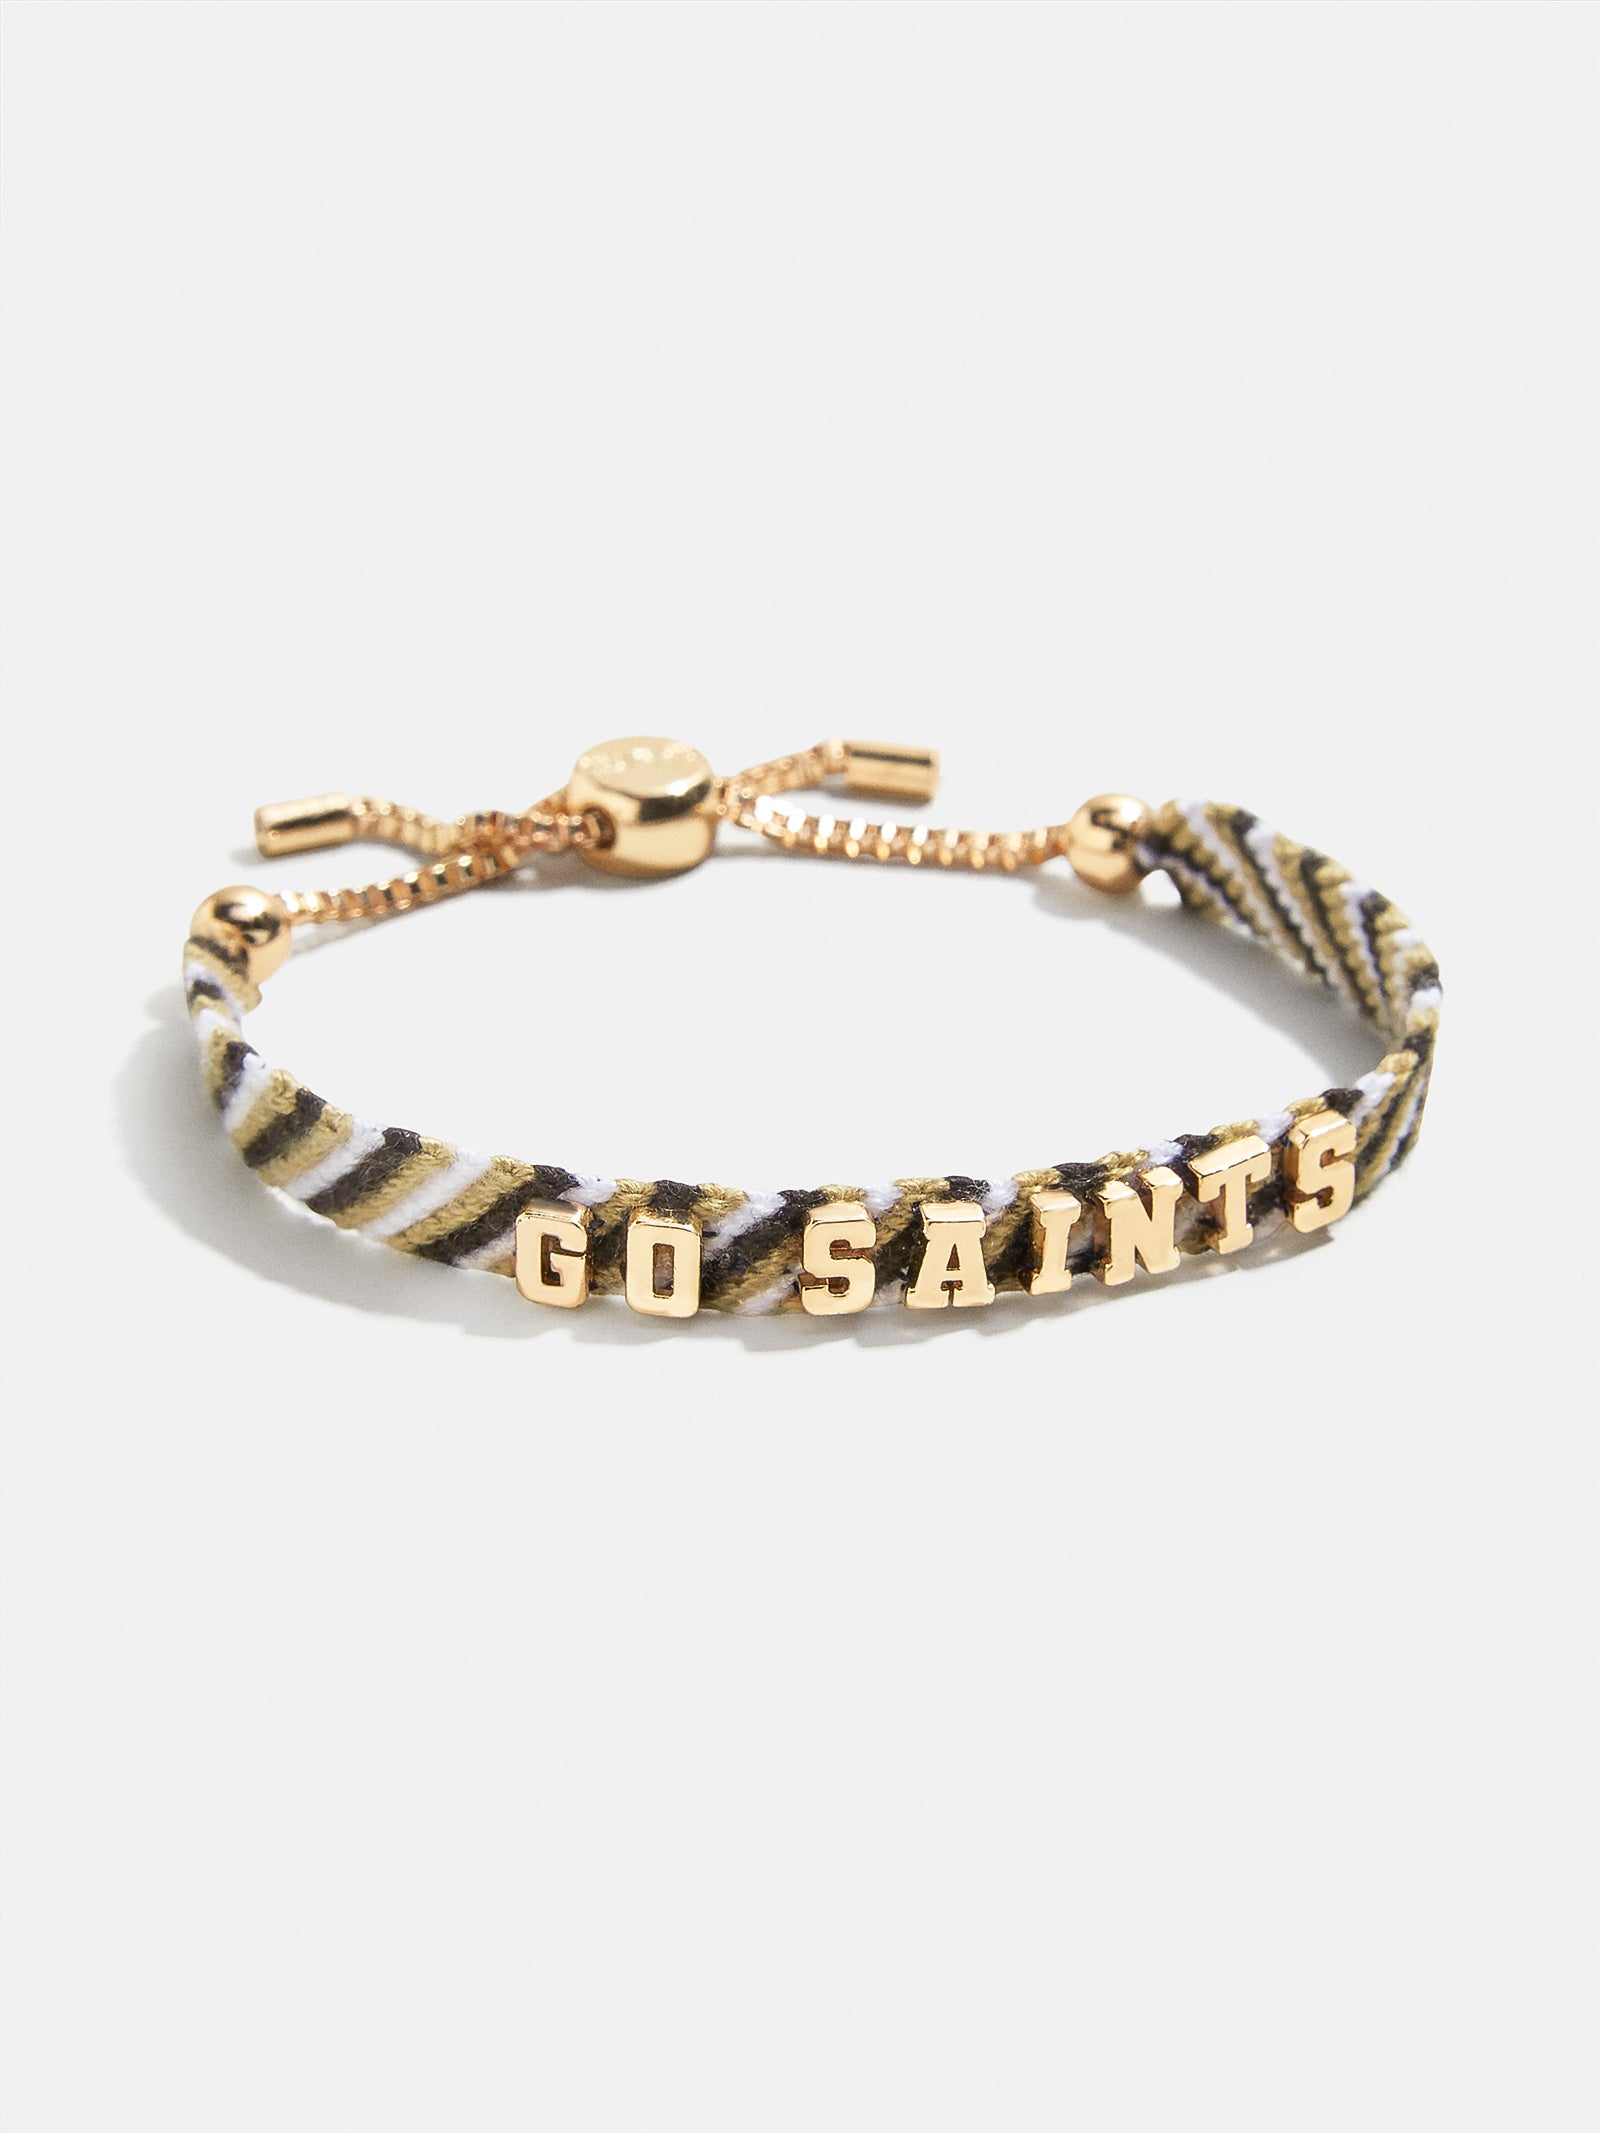 Large New Orleans Saints Mens Gift Set Stainless 24 Necklace Bracelet D4D30